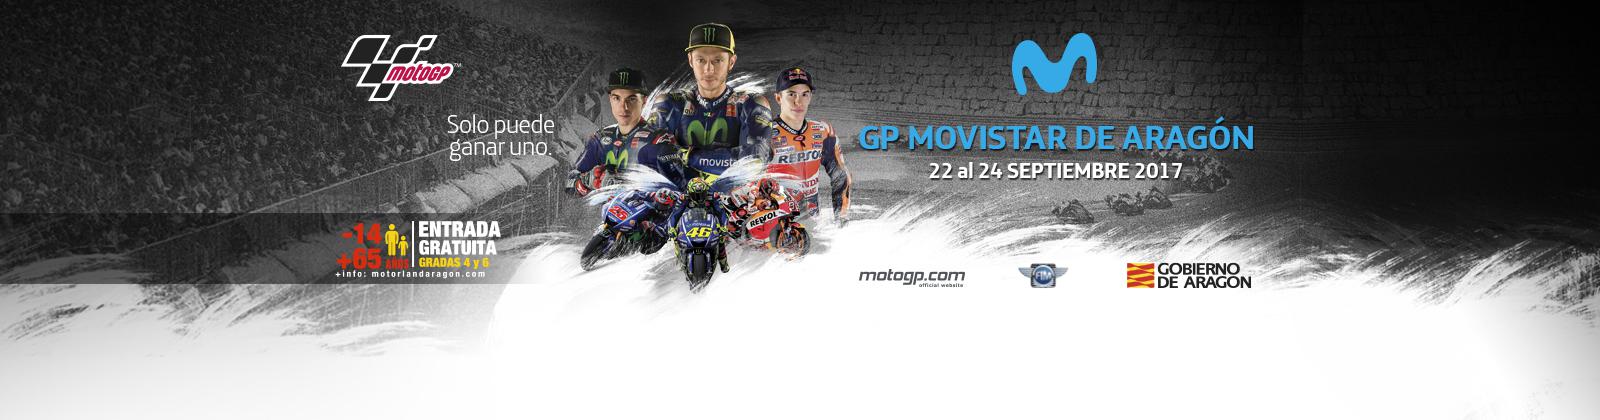 Horarios del Gran Premio de Aragón de MotoGp